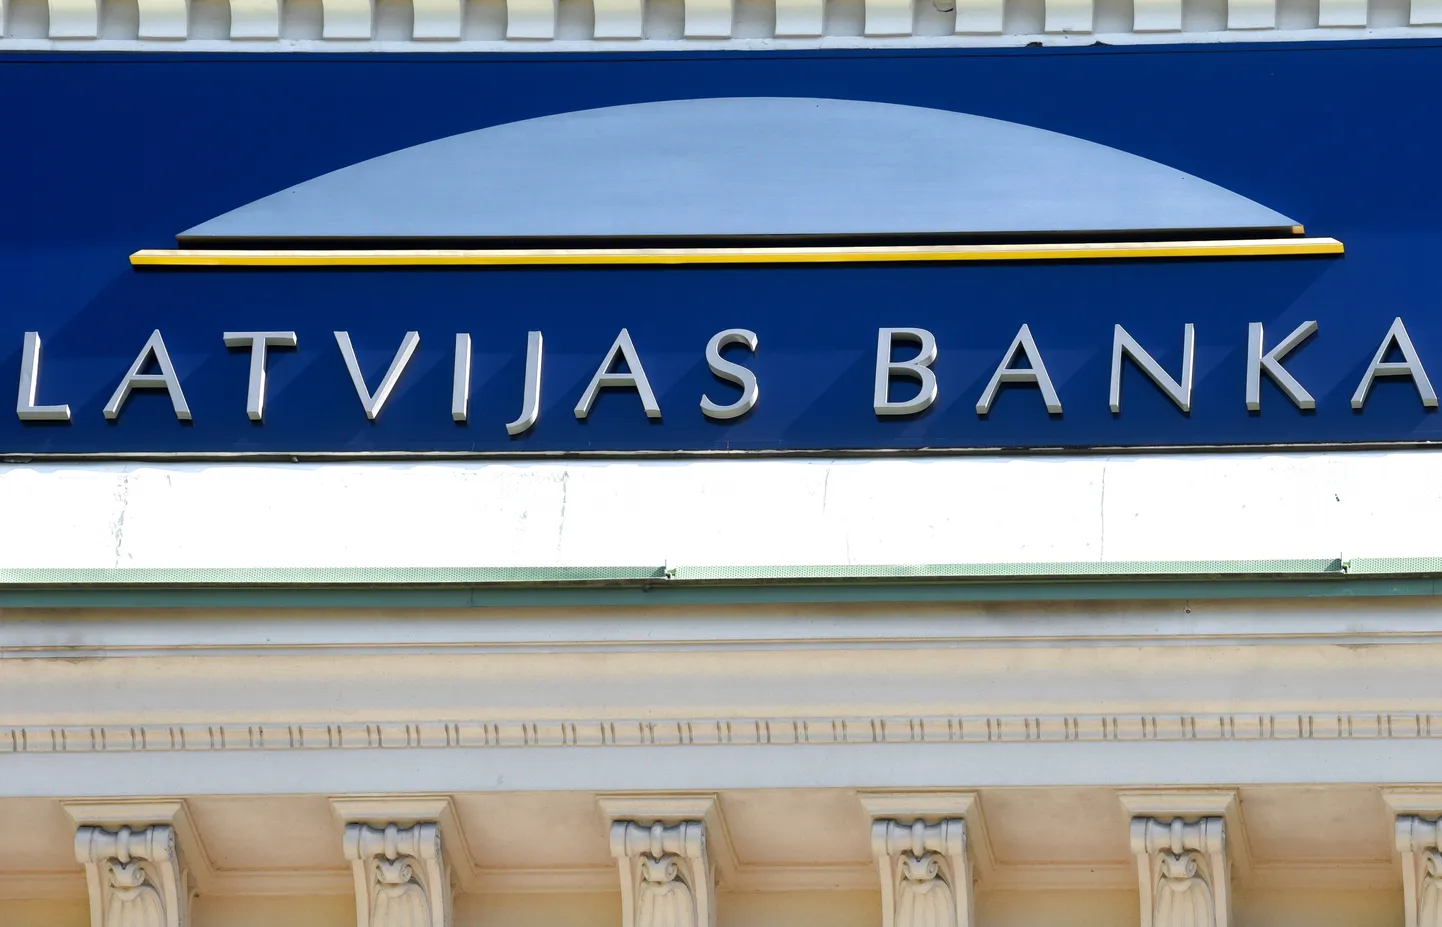 Latvijas bankas restaurētais uzraksts.